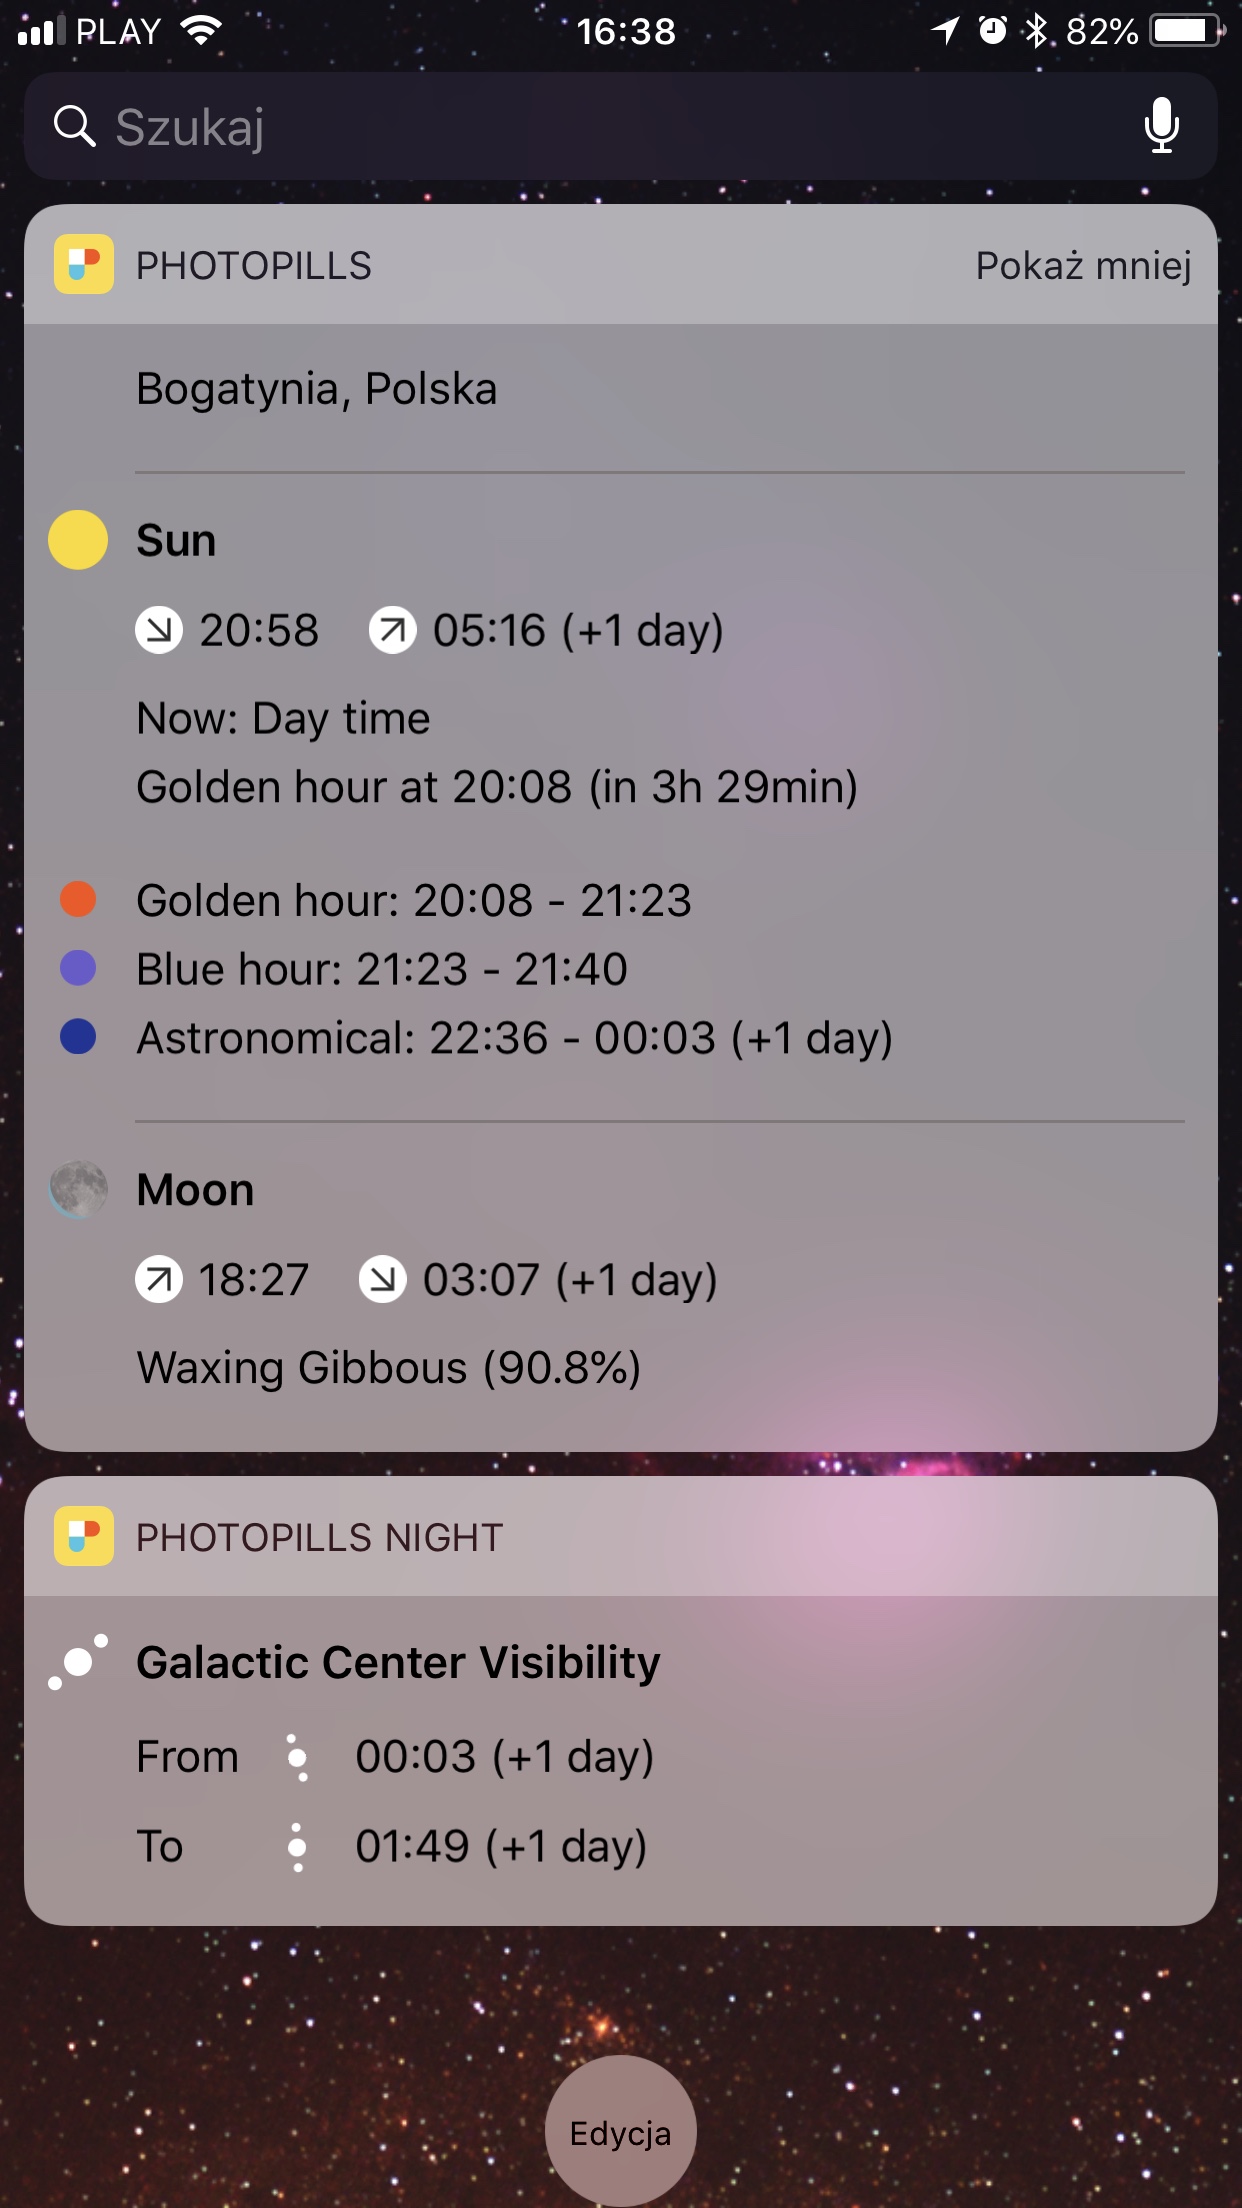 PhotoPills iOS app astrophotography widget screenshot